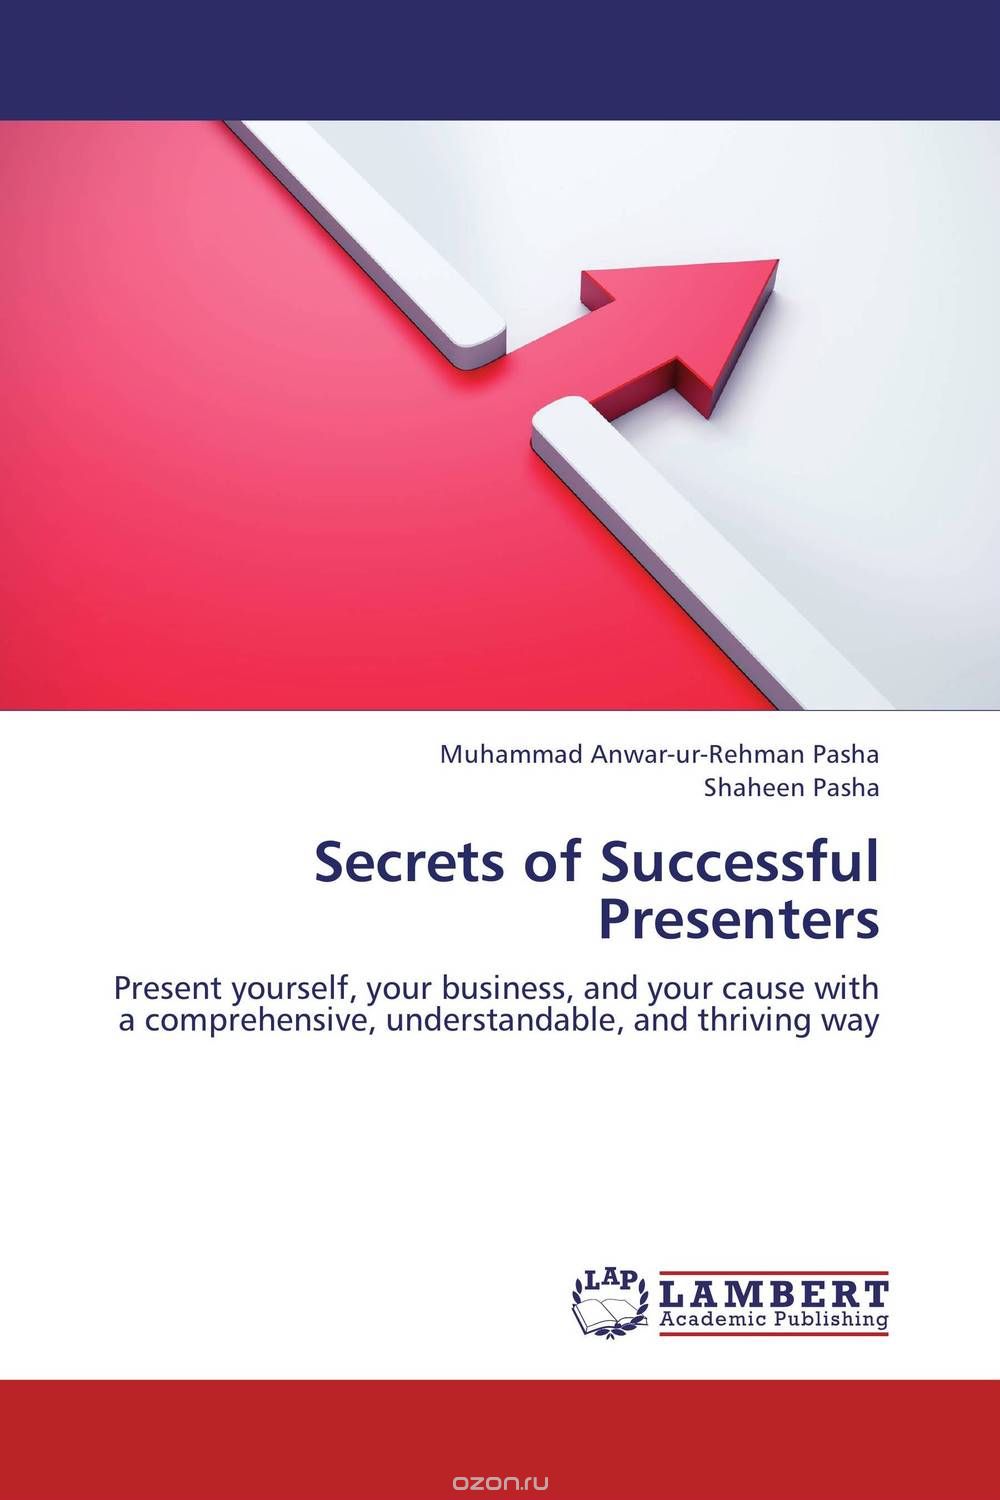 Скачать книгу "Secrets of Successful Presenters"